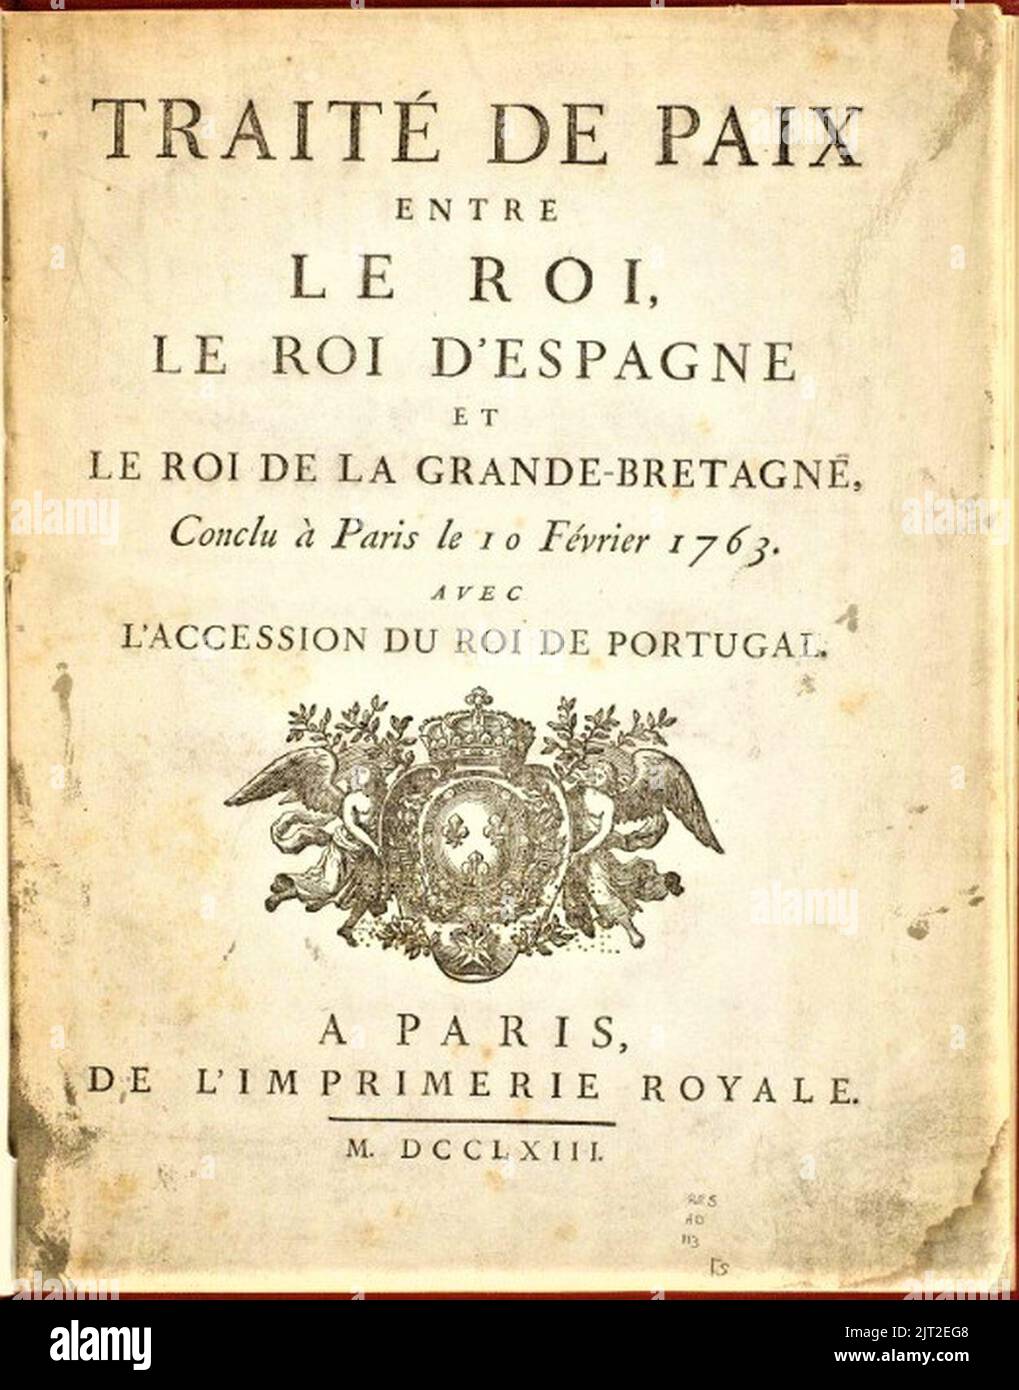 TRAITÉ DE PARIS 10 FÉVRIER 1763 (Francia GB Espagne). Foto Stock